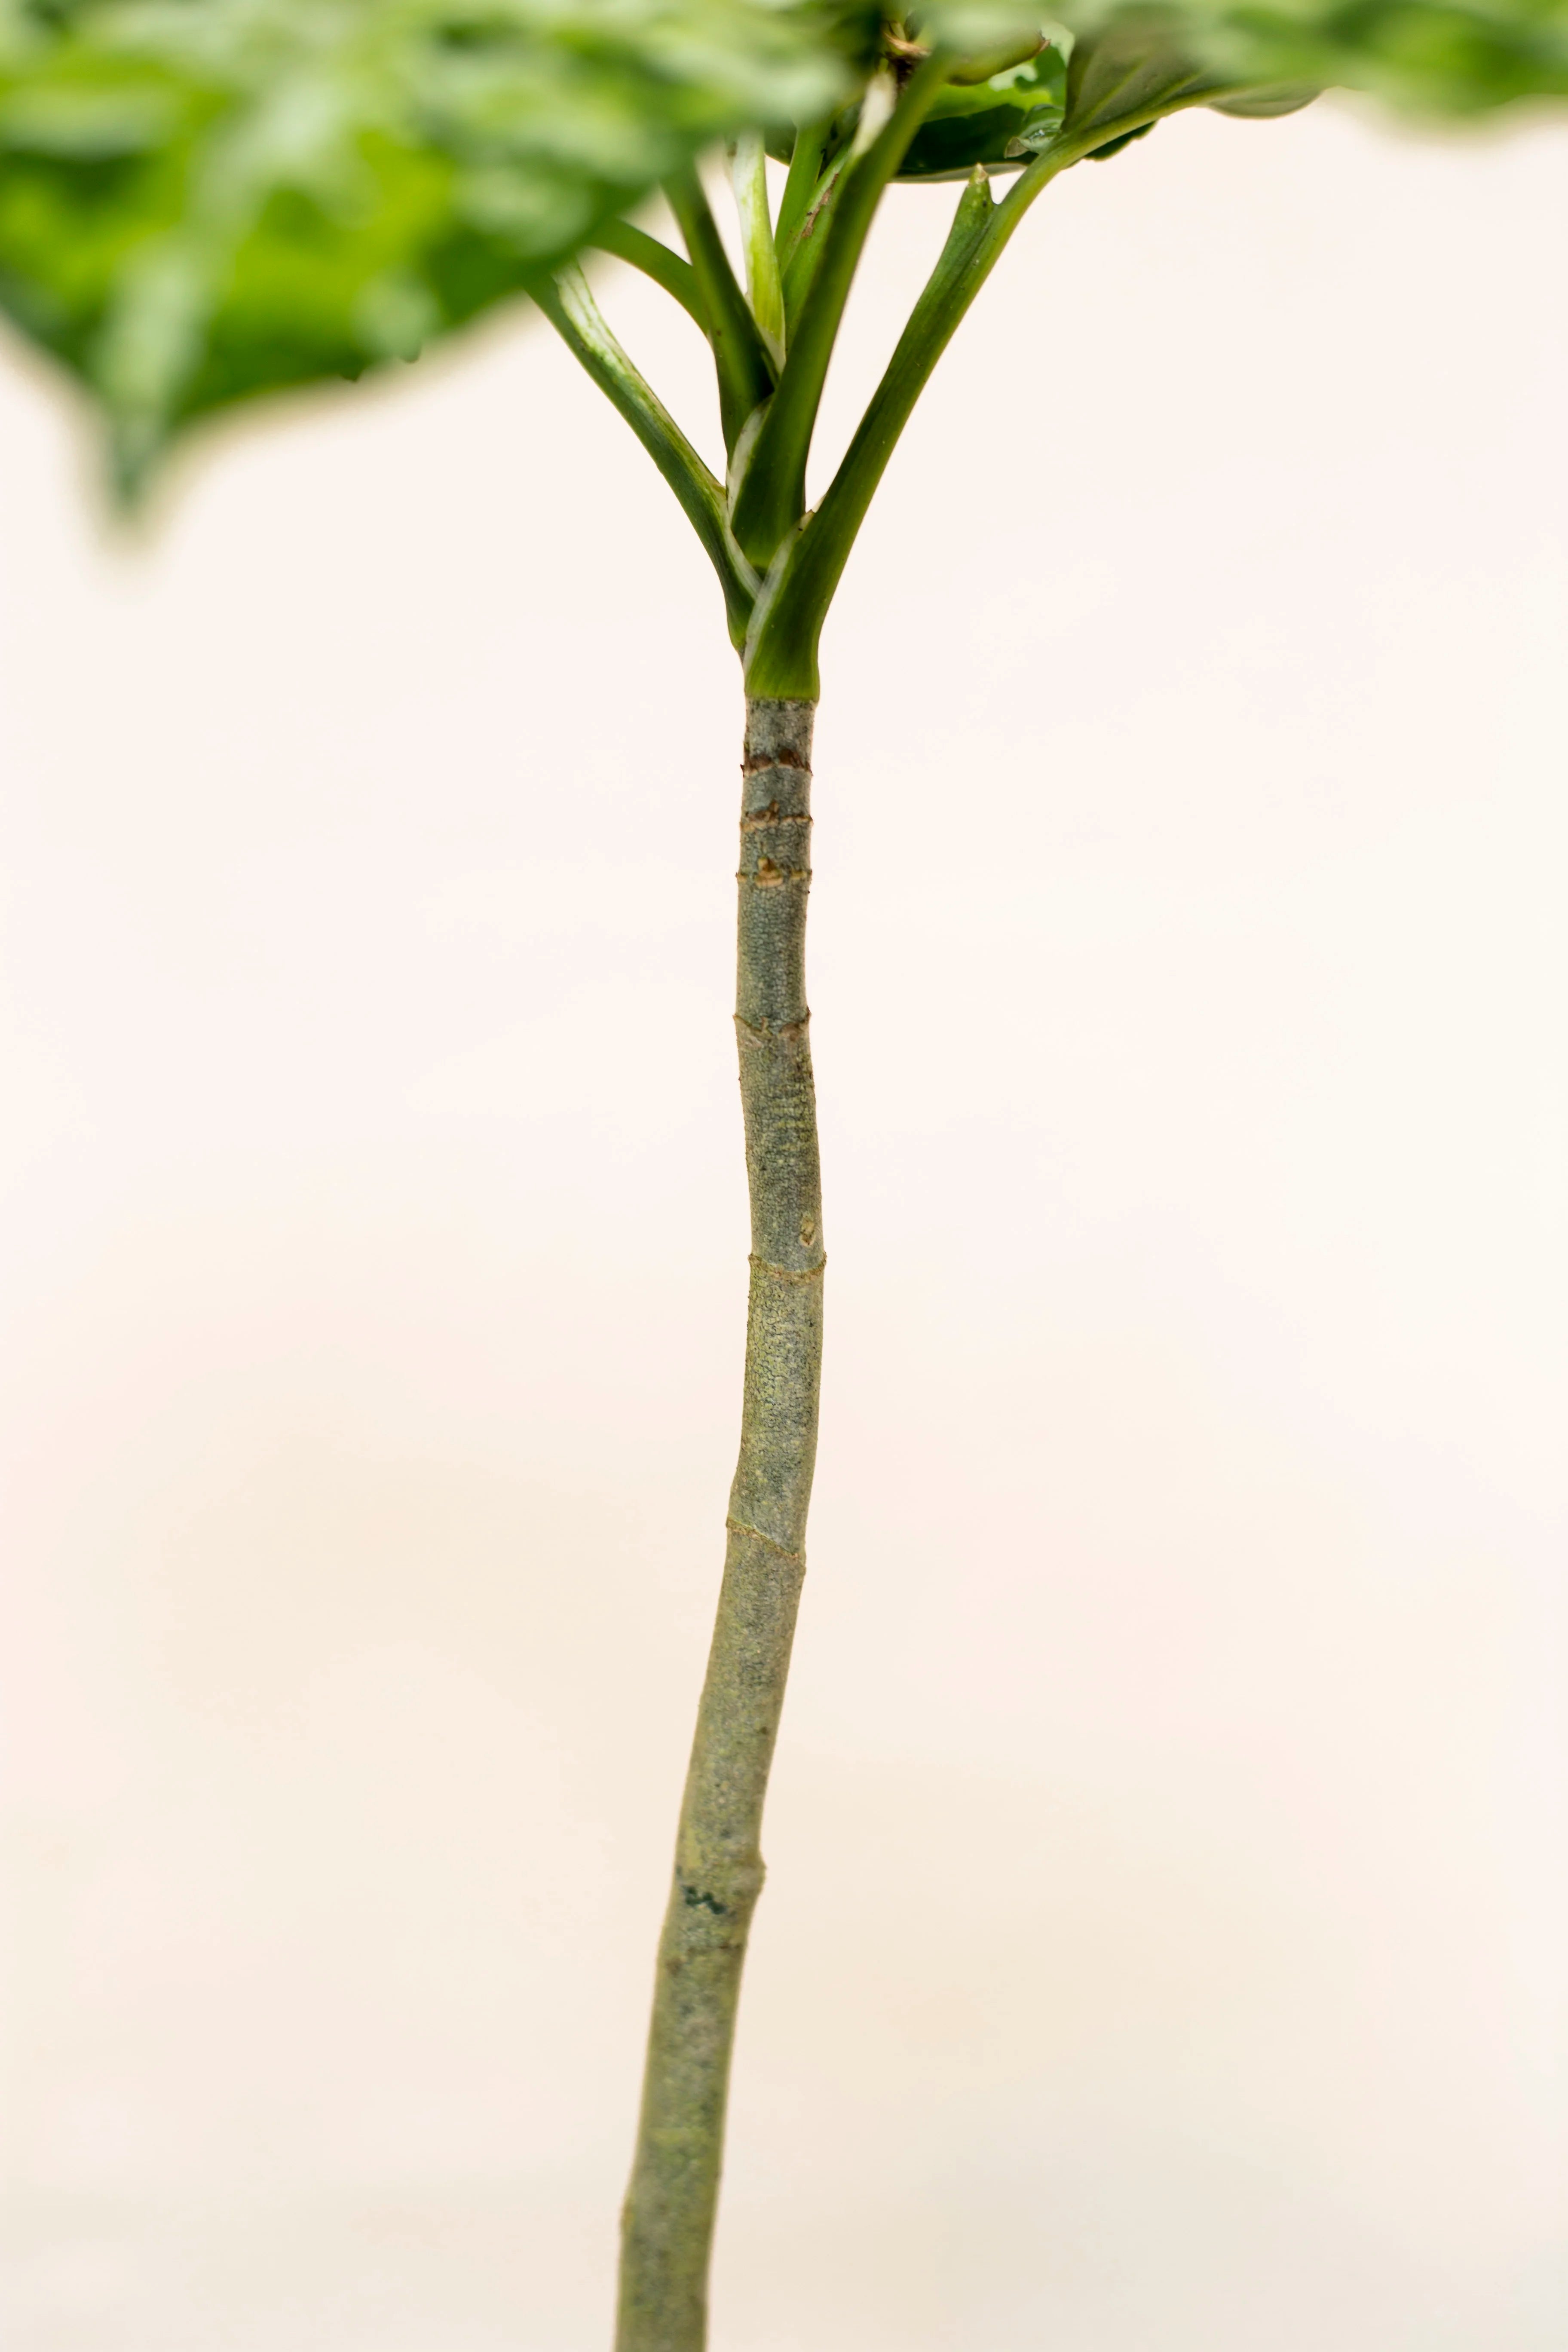 Aglaonema pictum var. 3 color "regular form"